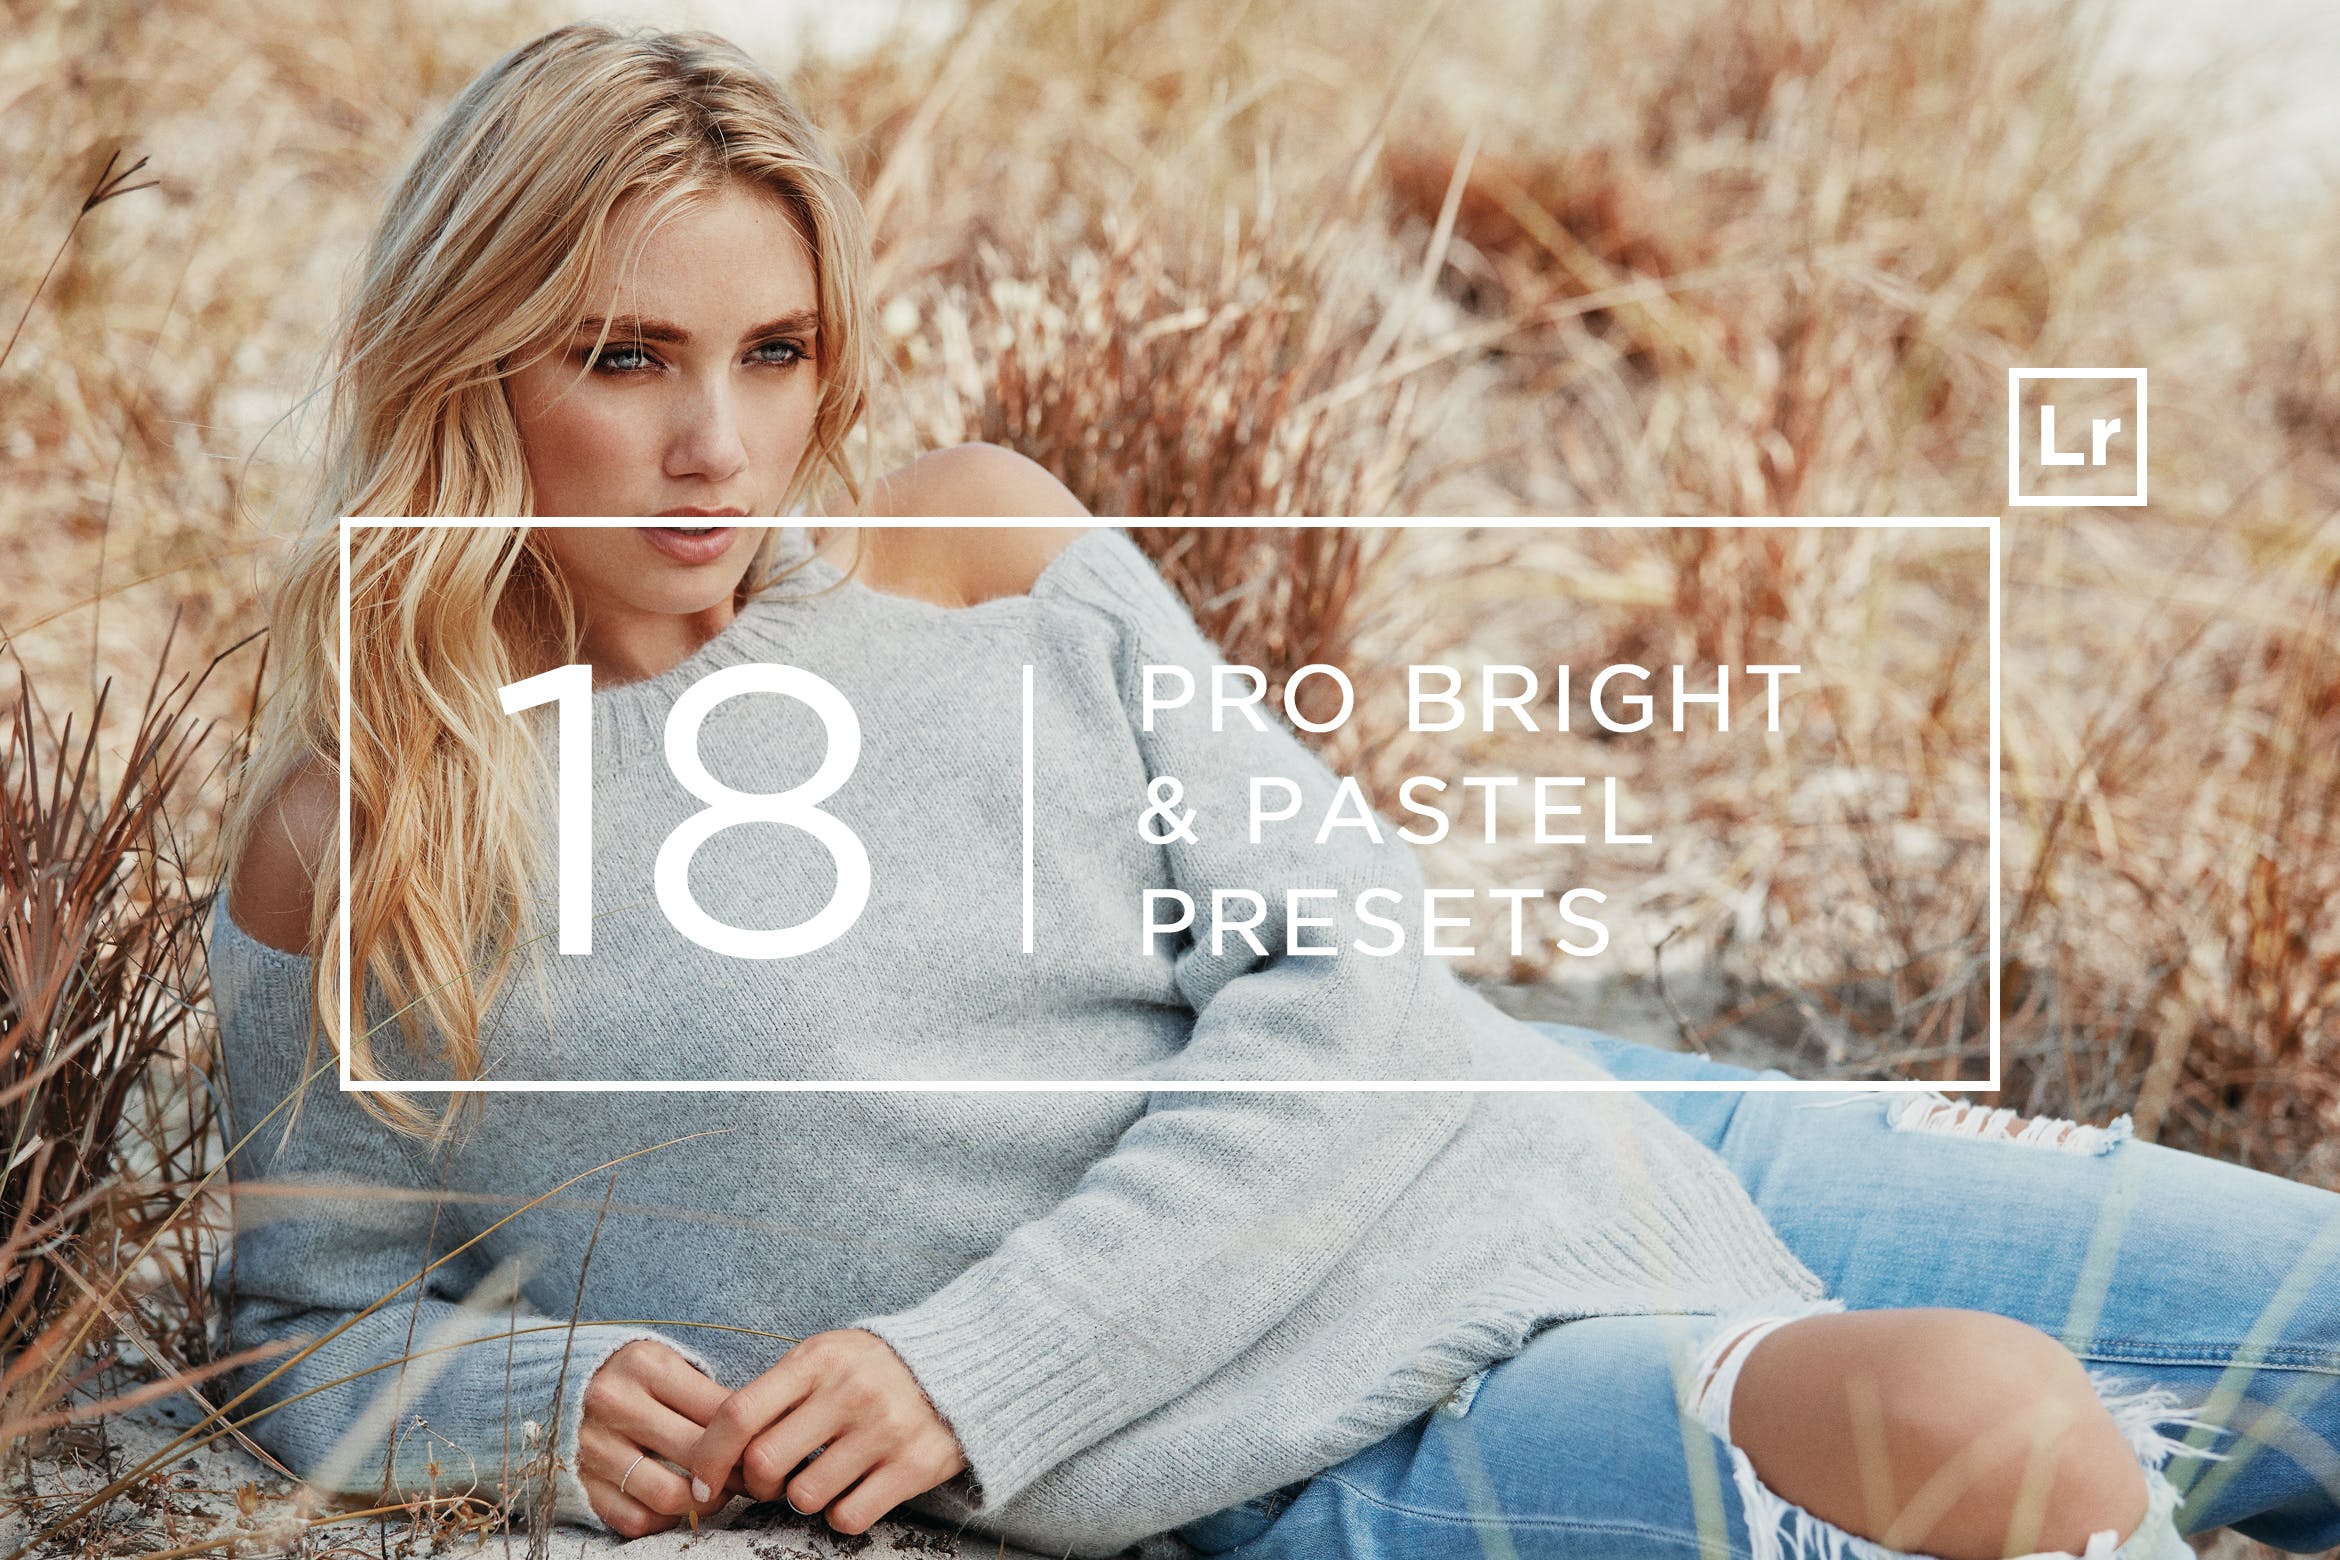 18个专业摄影师调色滤镜定制第一素材精选LR预设 18 Pro Bright & Pastel Lightroom Presets插图